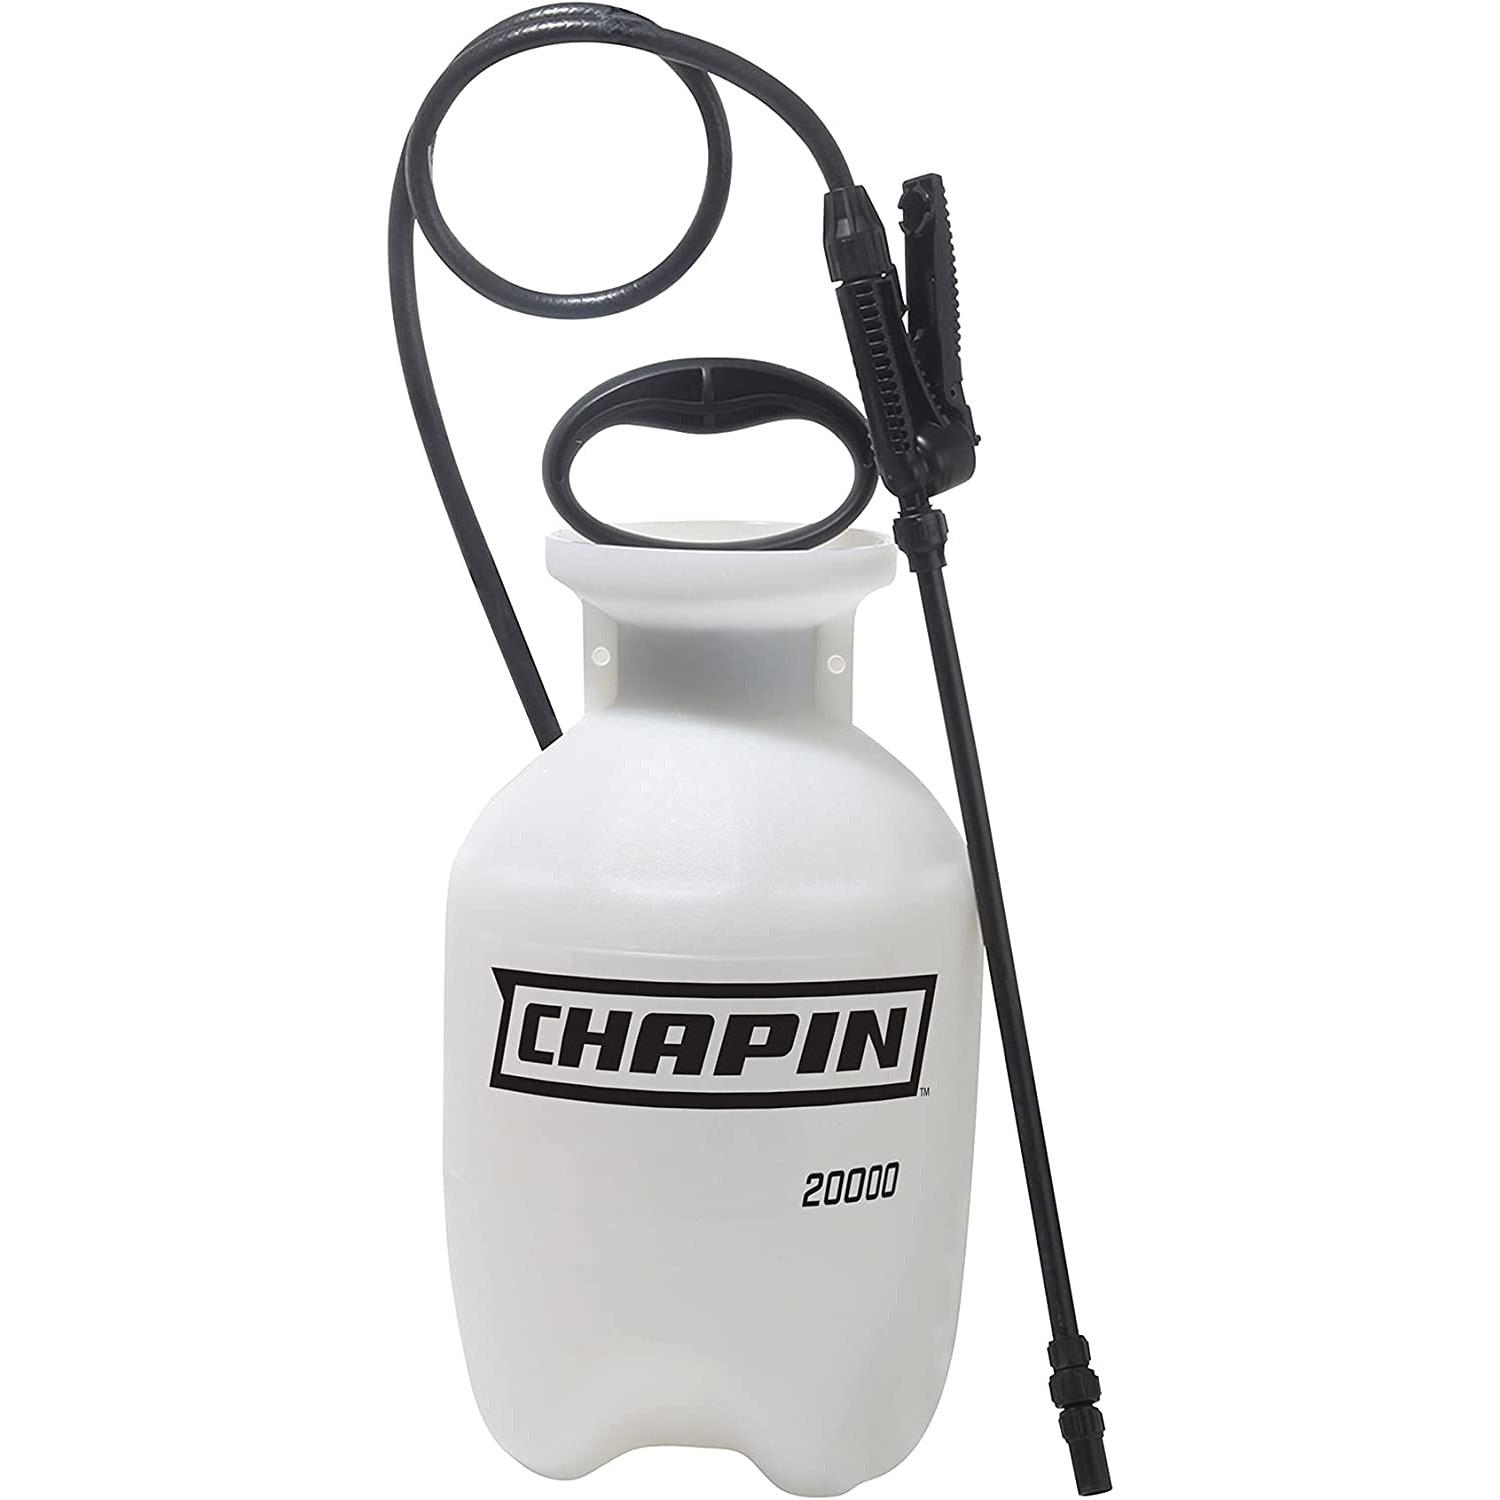 Chapin 20000 Garden Sprayer 1 Gallon Lawn for $10.49